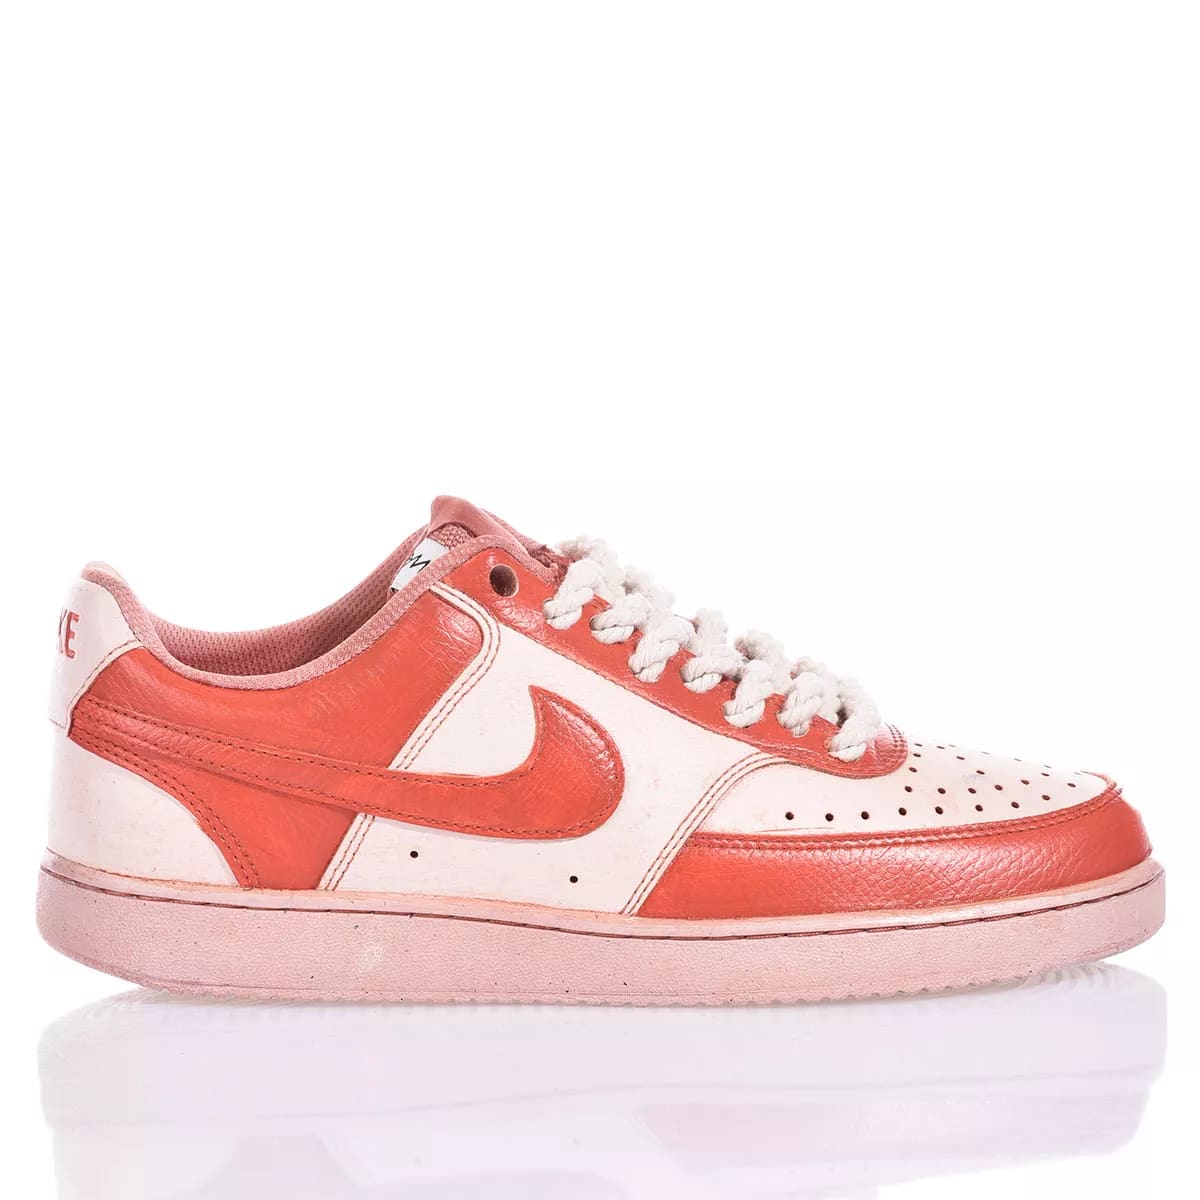 Nike Red Shoes: Mimanerashop.com